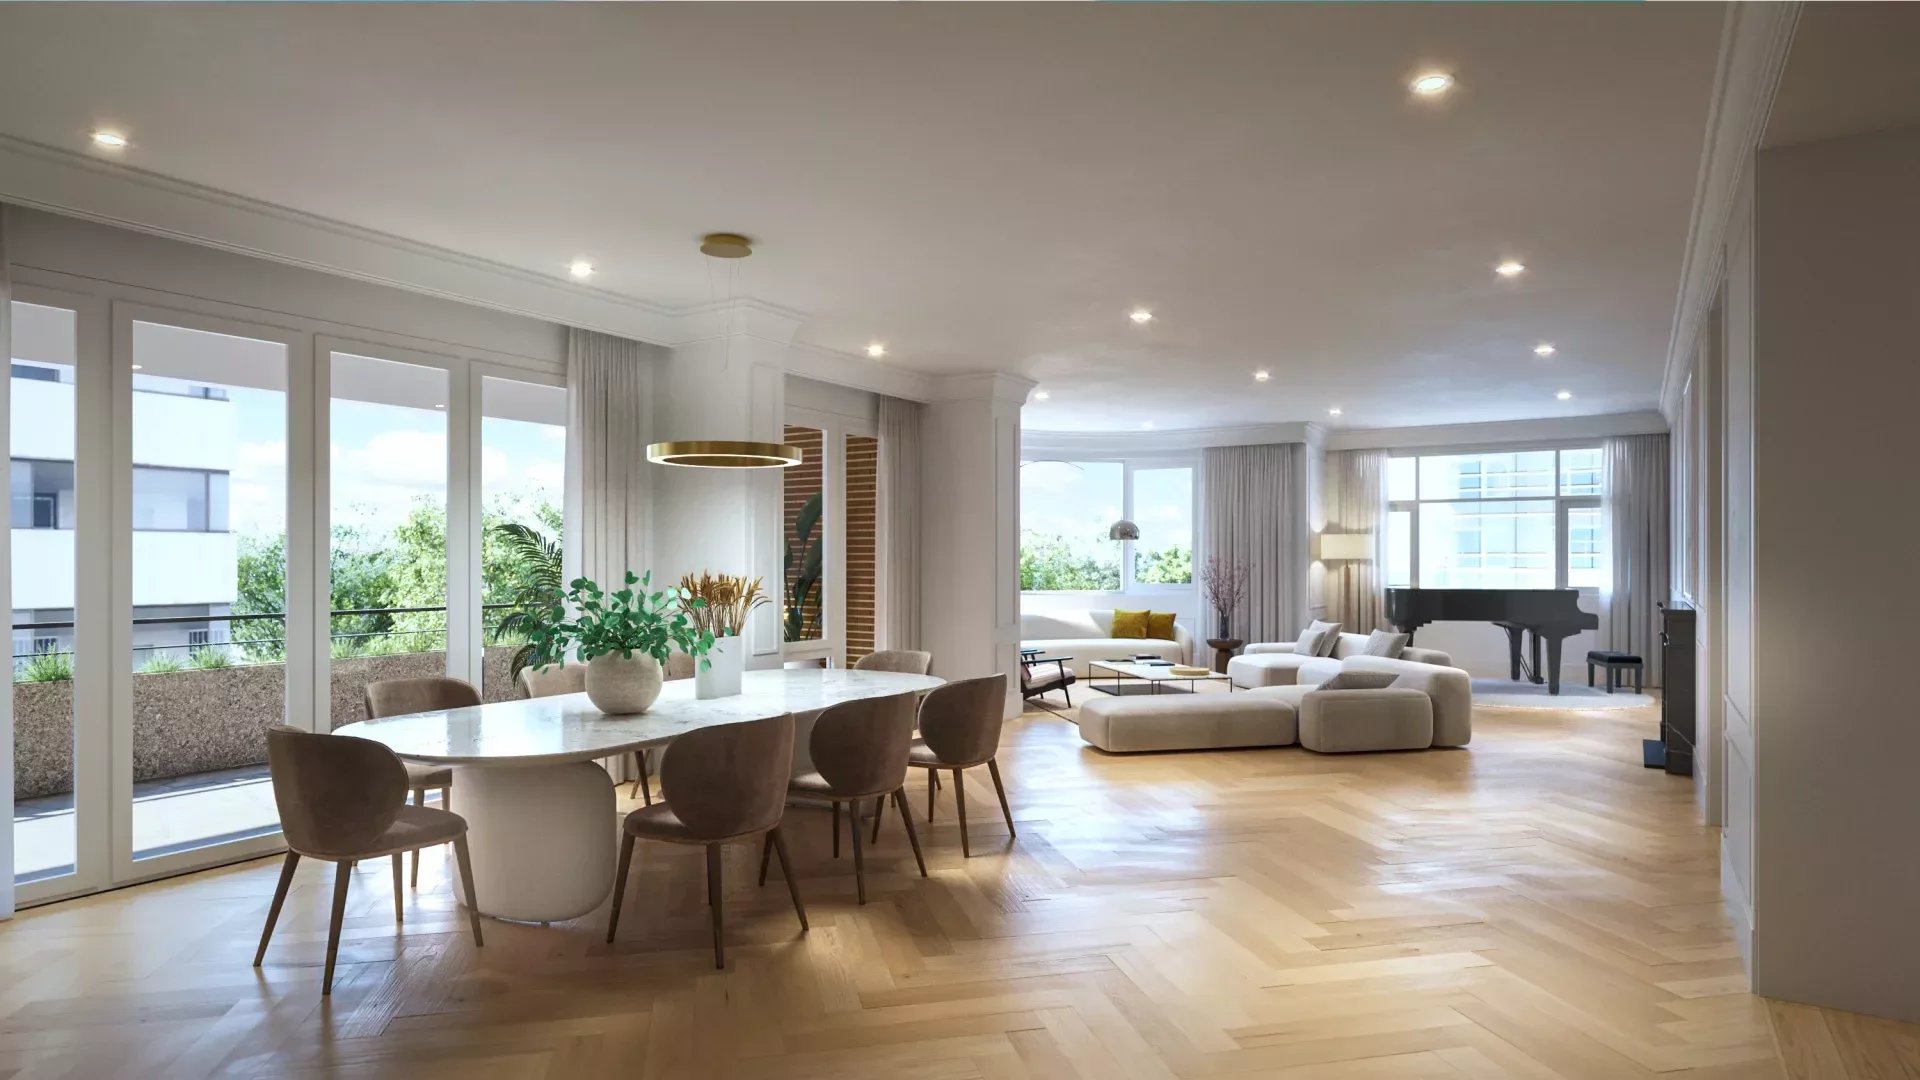 MADRID - SALAMANCA - RECOLETOS Magnifique appartement de 437m2 à rénover